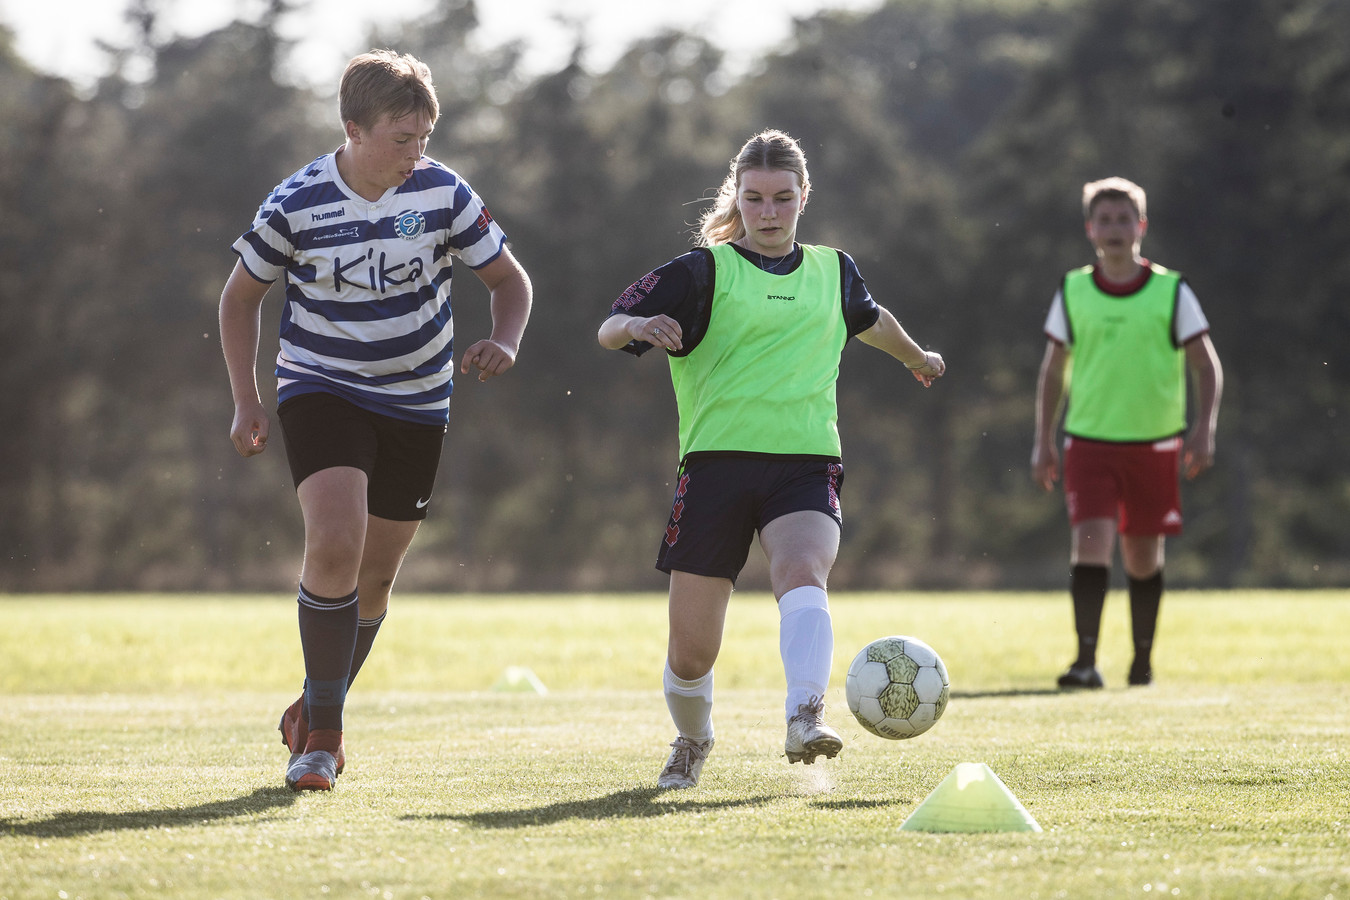 Spelers van de vier oudste jeugdteams van VV Wolfersveen en SV Halle maken deze weken kennis met elkaar in gezamenlijke trainingen.